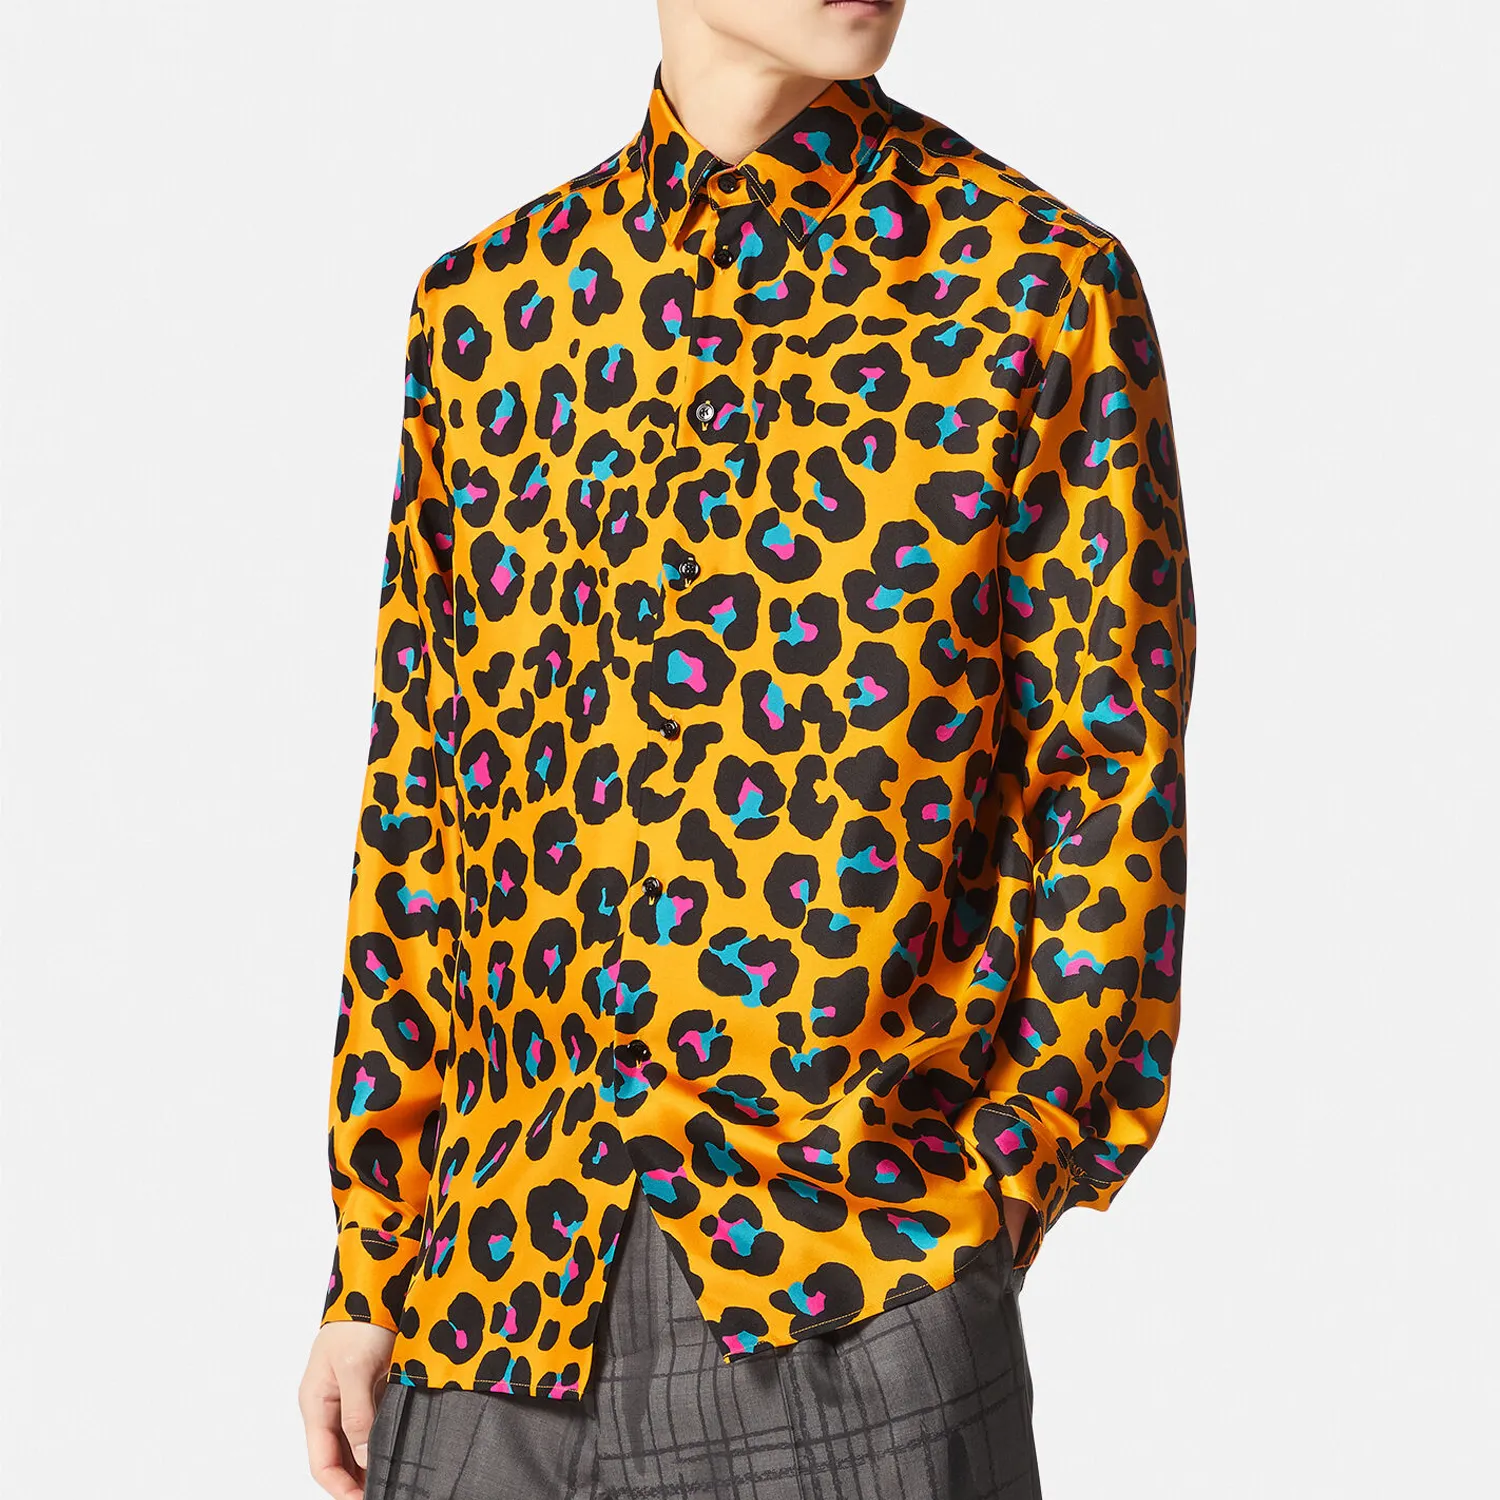 Camisa de leopardo da margarida camisa masculina camisetas de marca roupas homens de manga longa camisa de vestido de hip hop de qualidade de algodão 104009268v